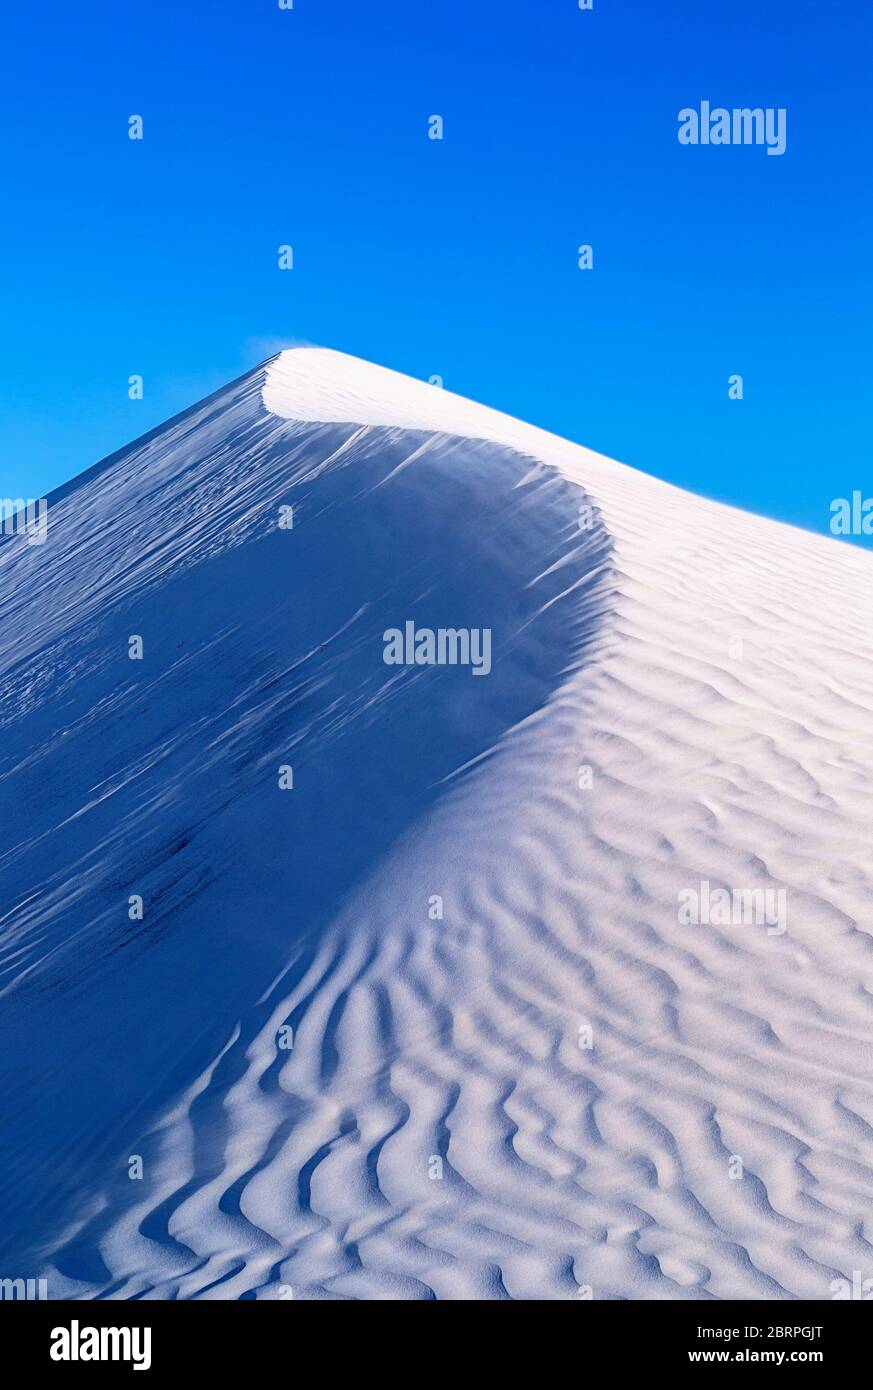 Wind weht Sand an der Spitze einer Sanddüne. Abstraktes Bild, das helle und dunkle Seiten zeigt Stockfoto